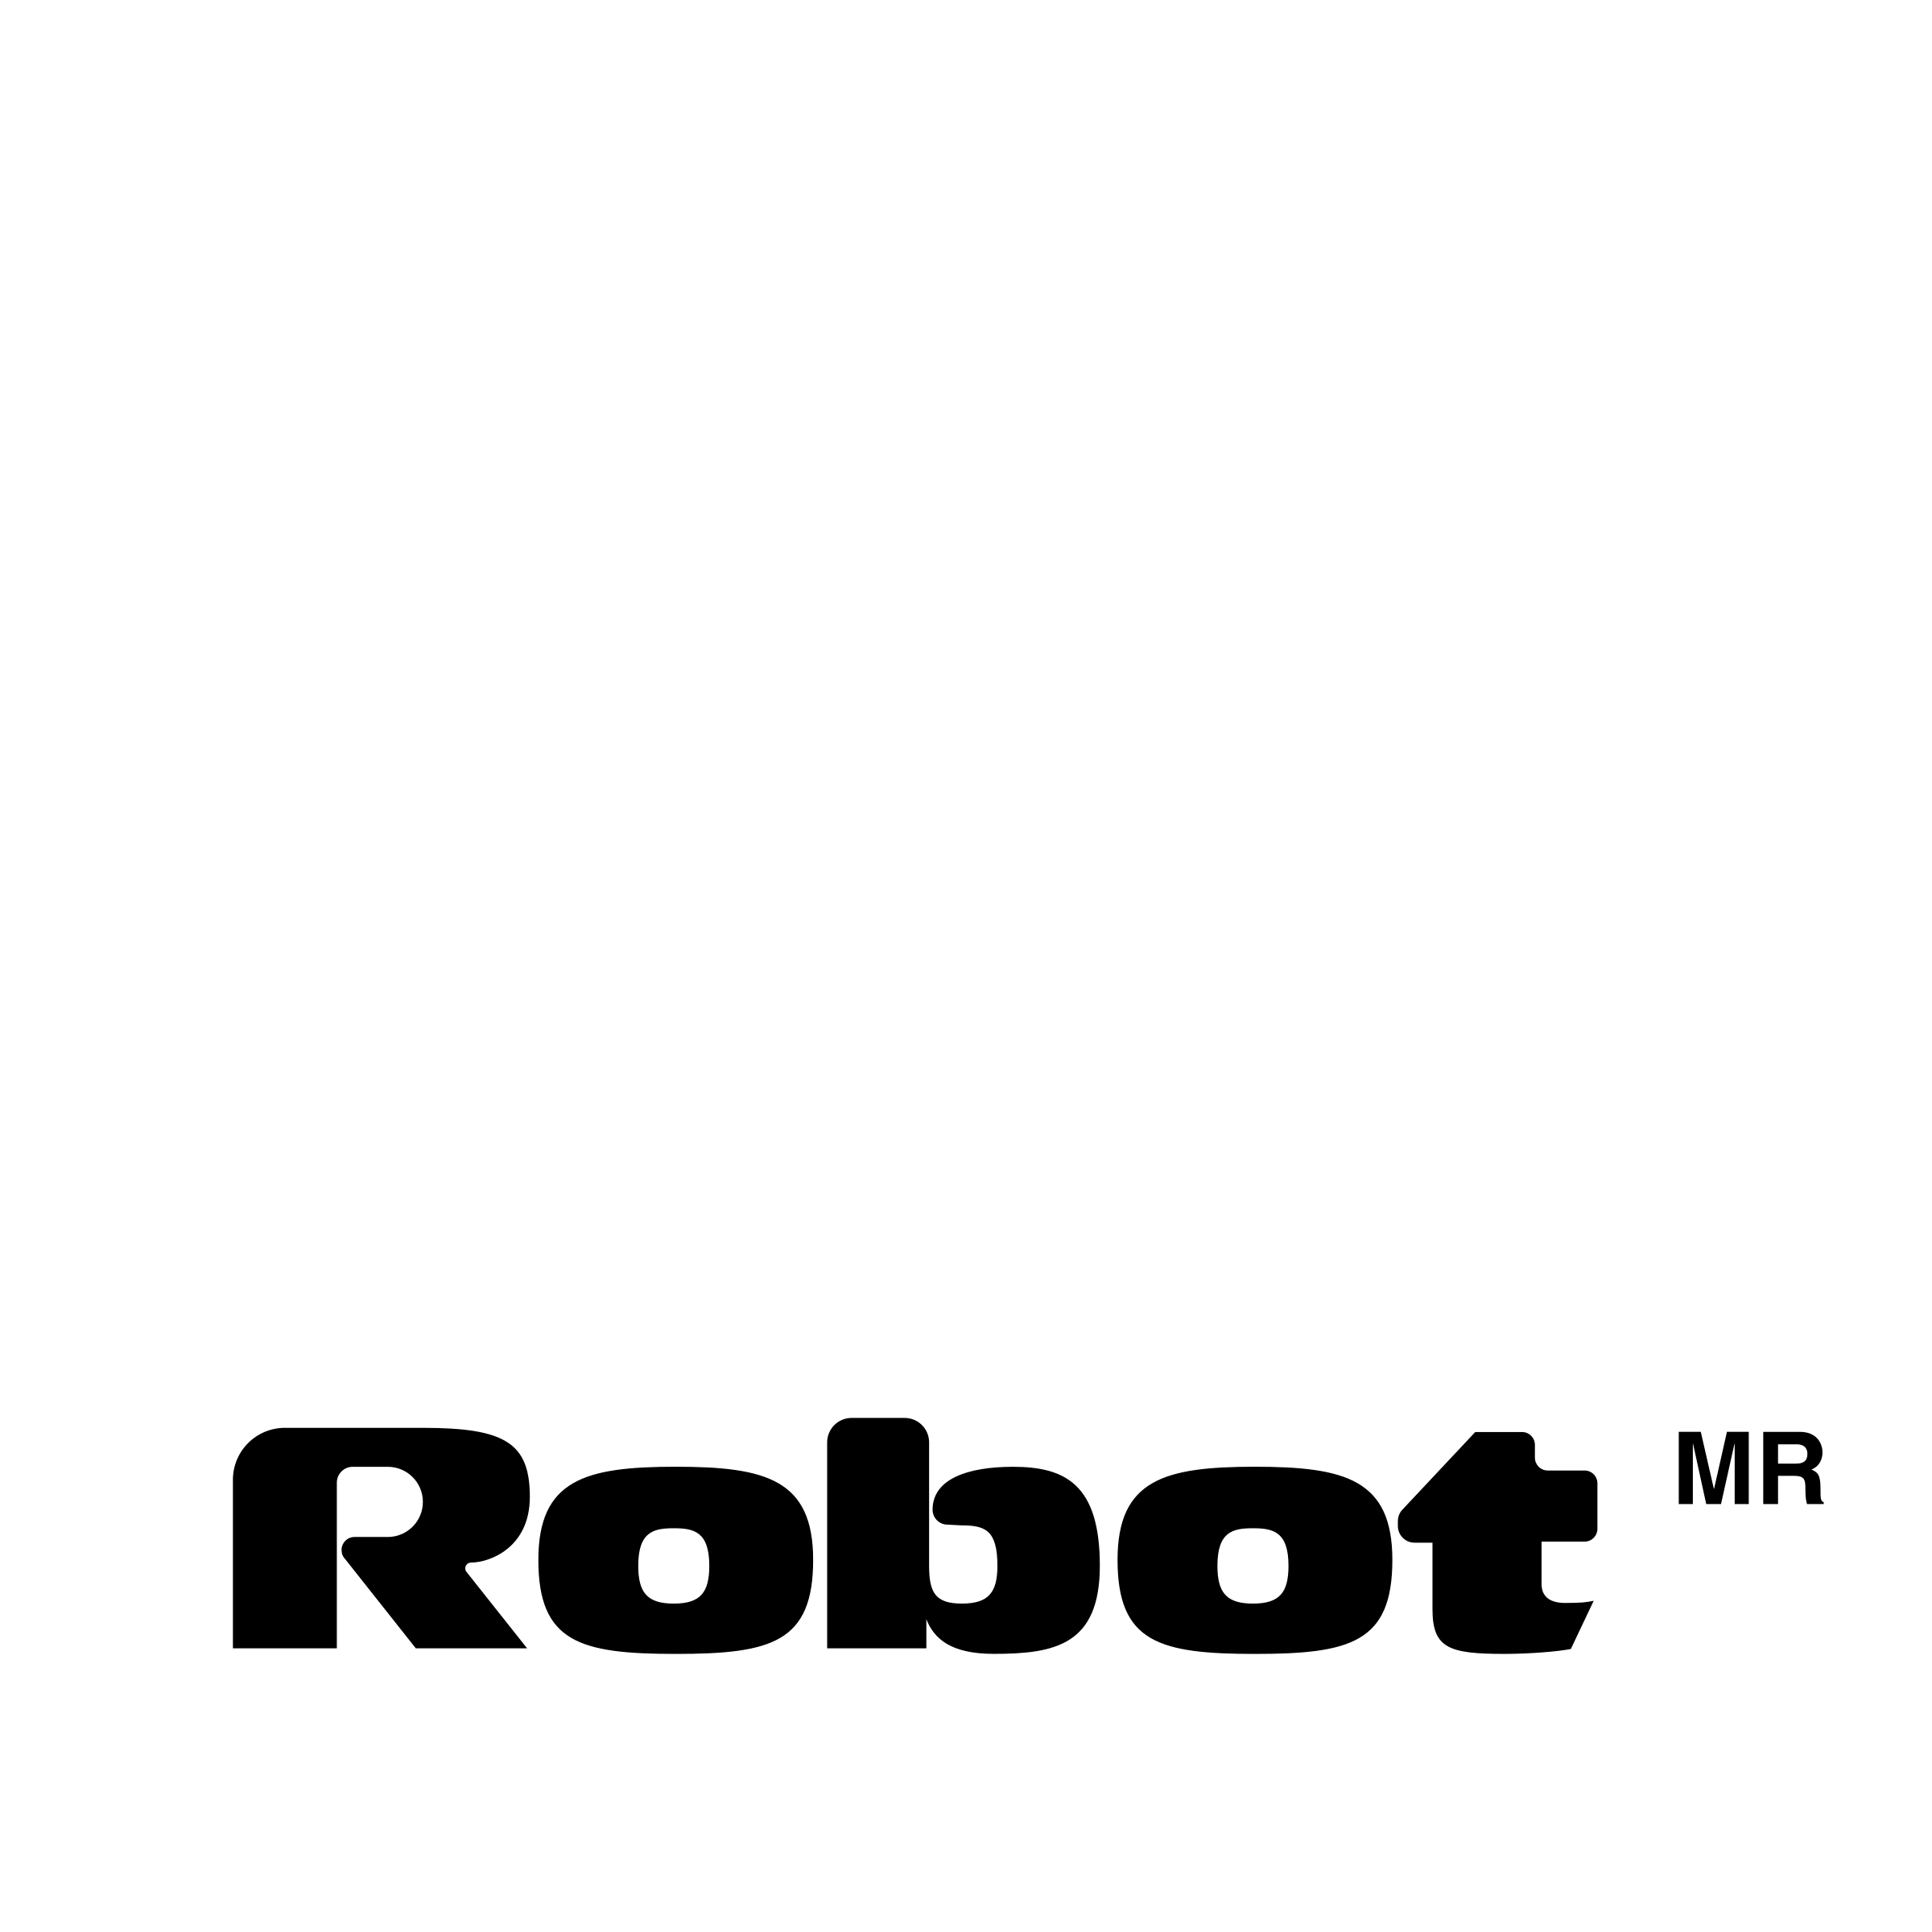 Black Robot Logo - Robot Logo PNG Transparent & SVG Vector